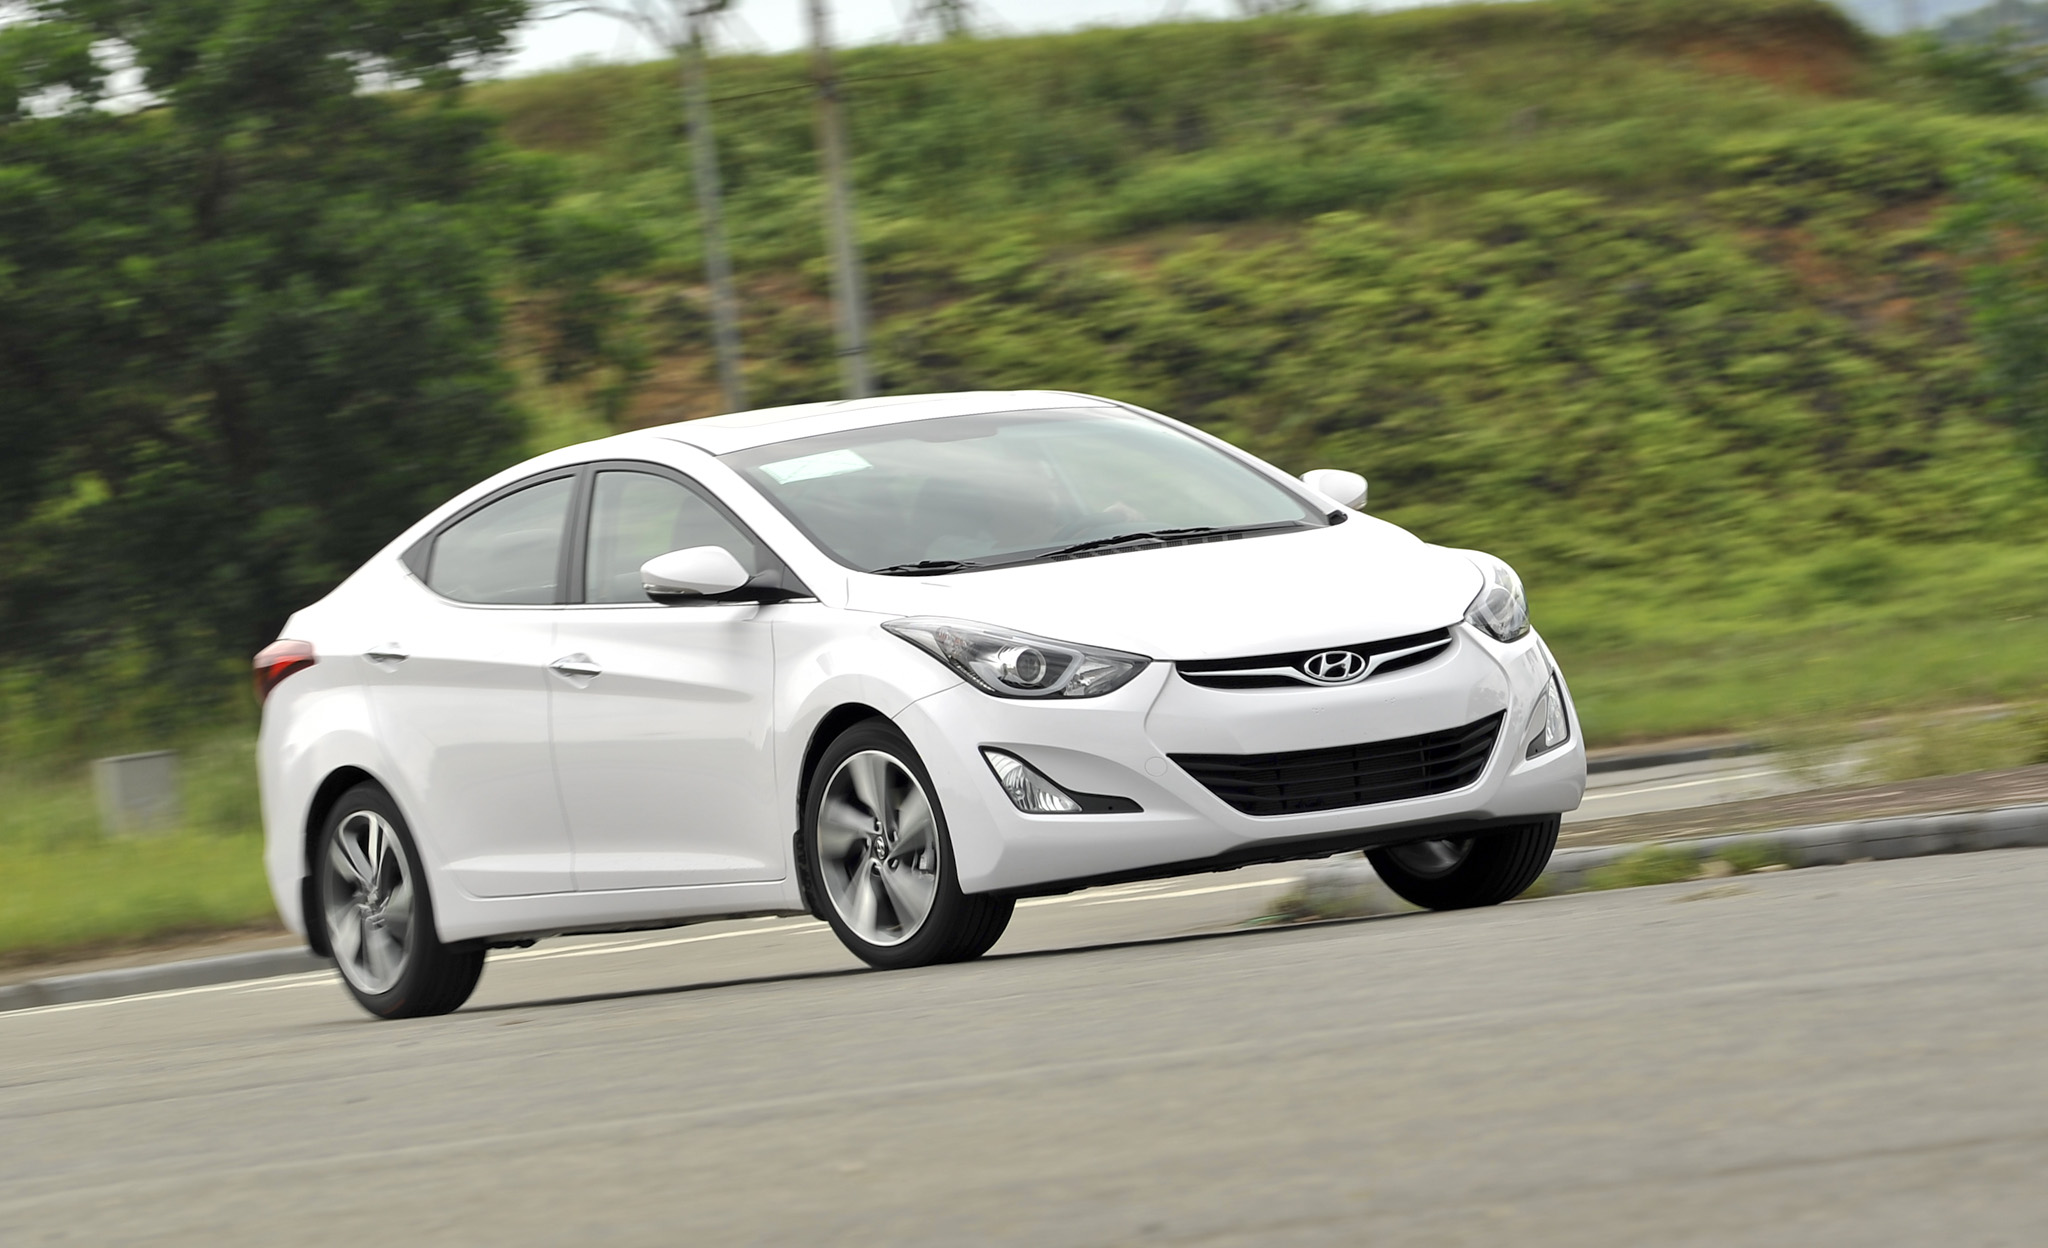 Hình ảnh Hyundai Thành Công khuyến mại 3 mẫu xe SantaFe, Avante và Elantra số 2